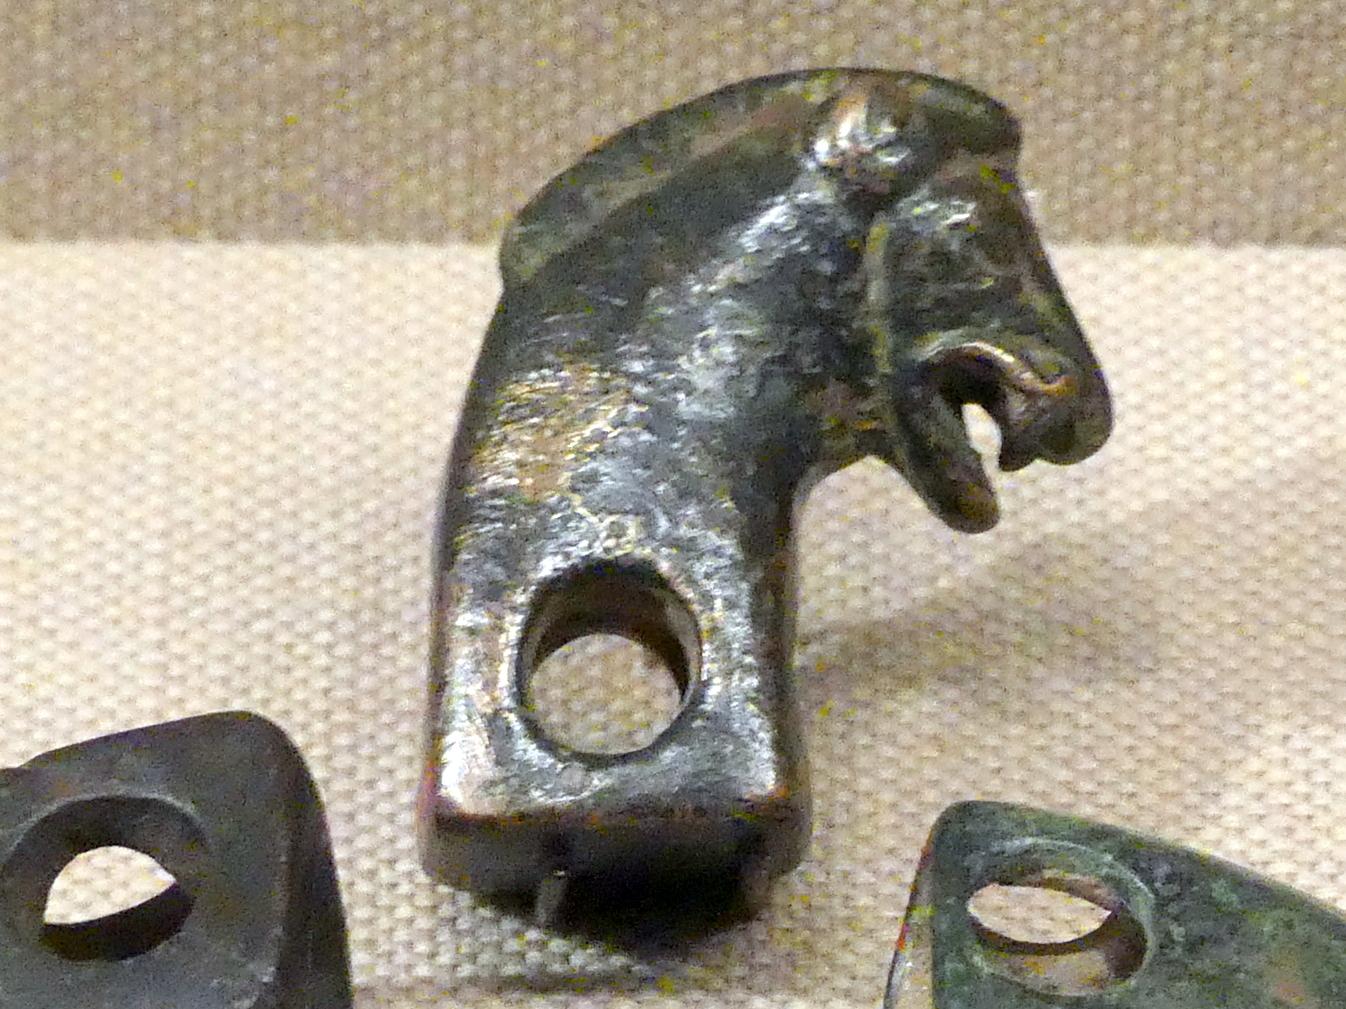 Geschirr oder Zaumzeug in Form eines Eberkopfes, Altpersisches Reich, 600 - 300 v. Chr., 600 - 300 v. Chr.